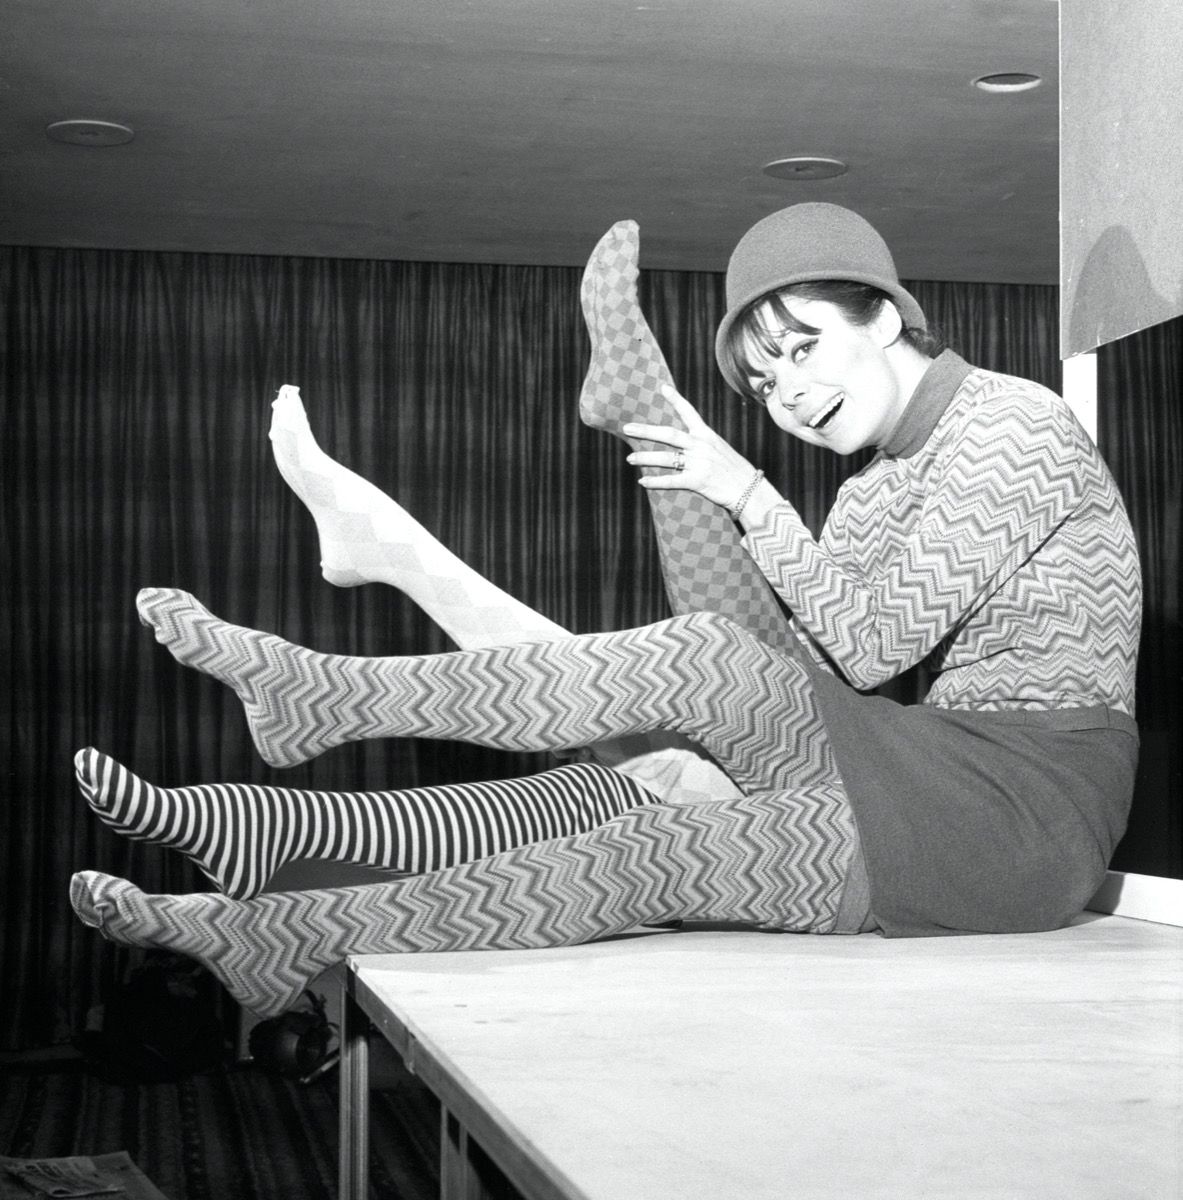 zwart-witfoto van een vrouw in de jaren zestig die een panty met een patroon draagt